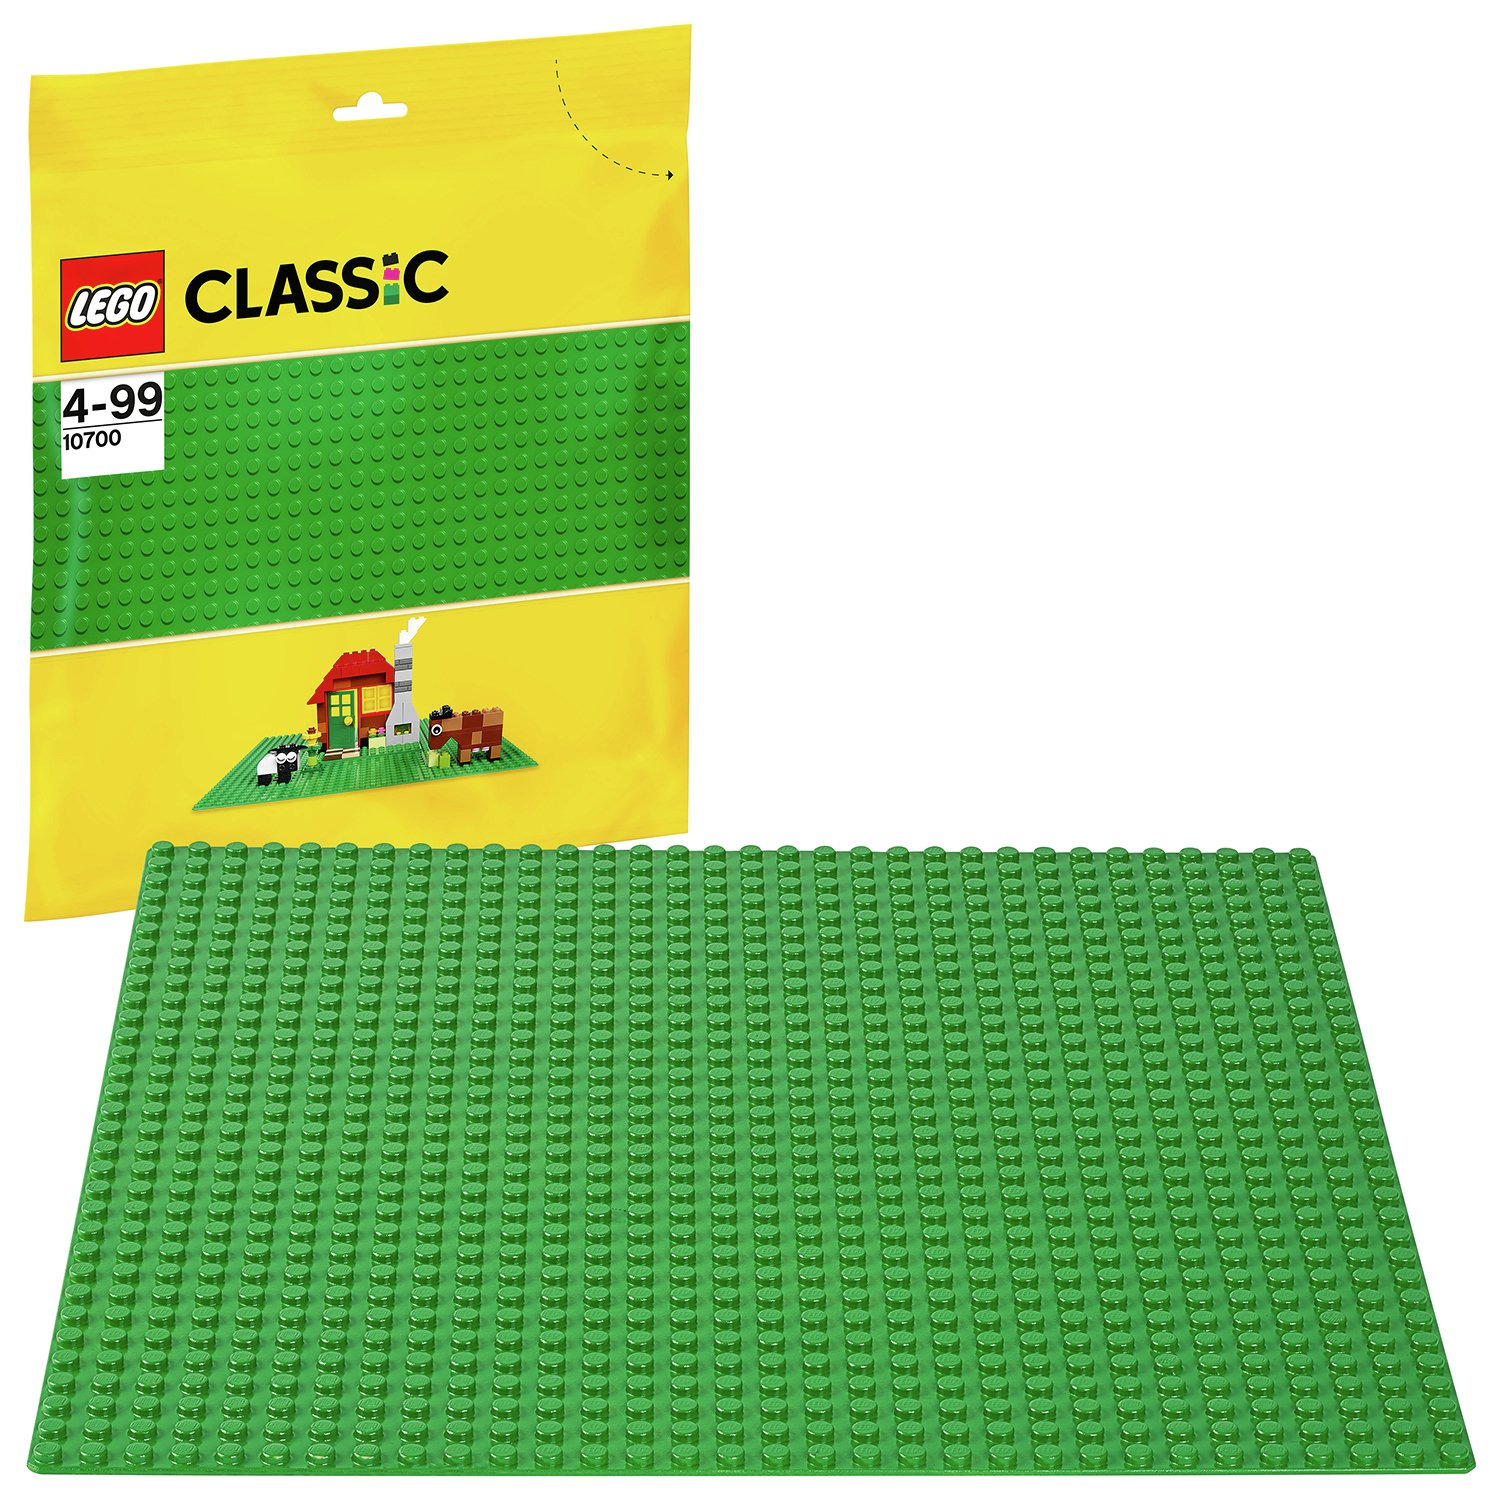 lego classic box argos